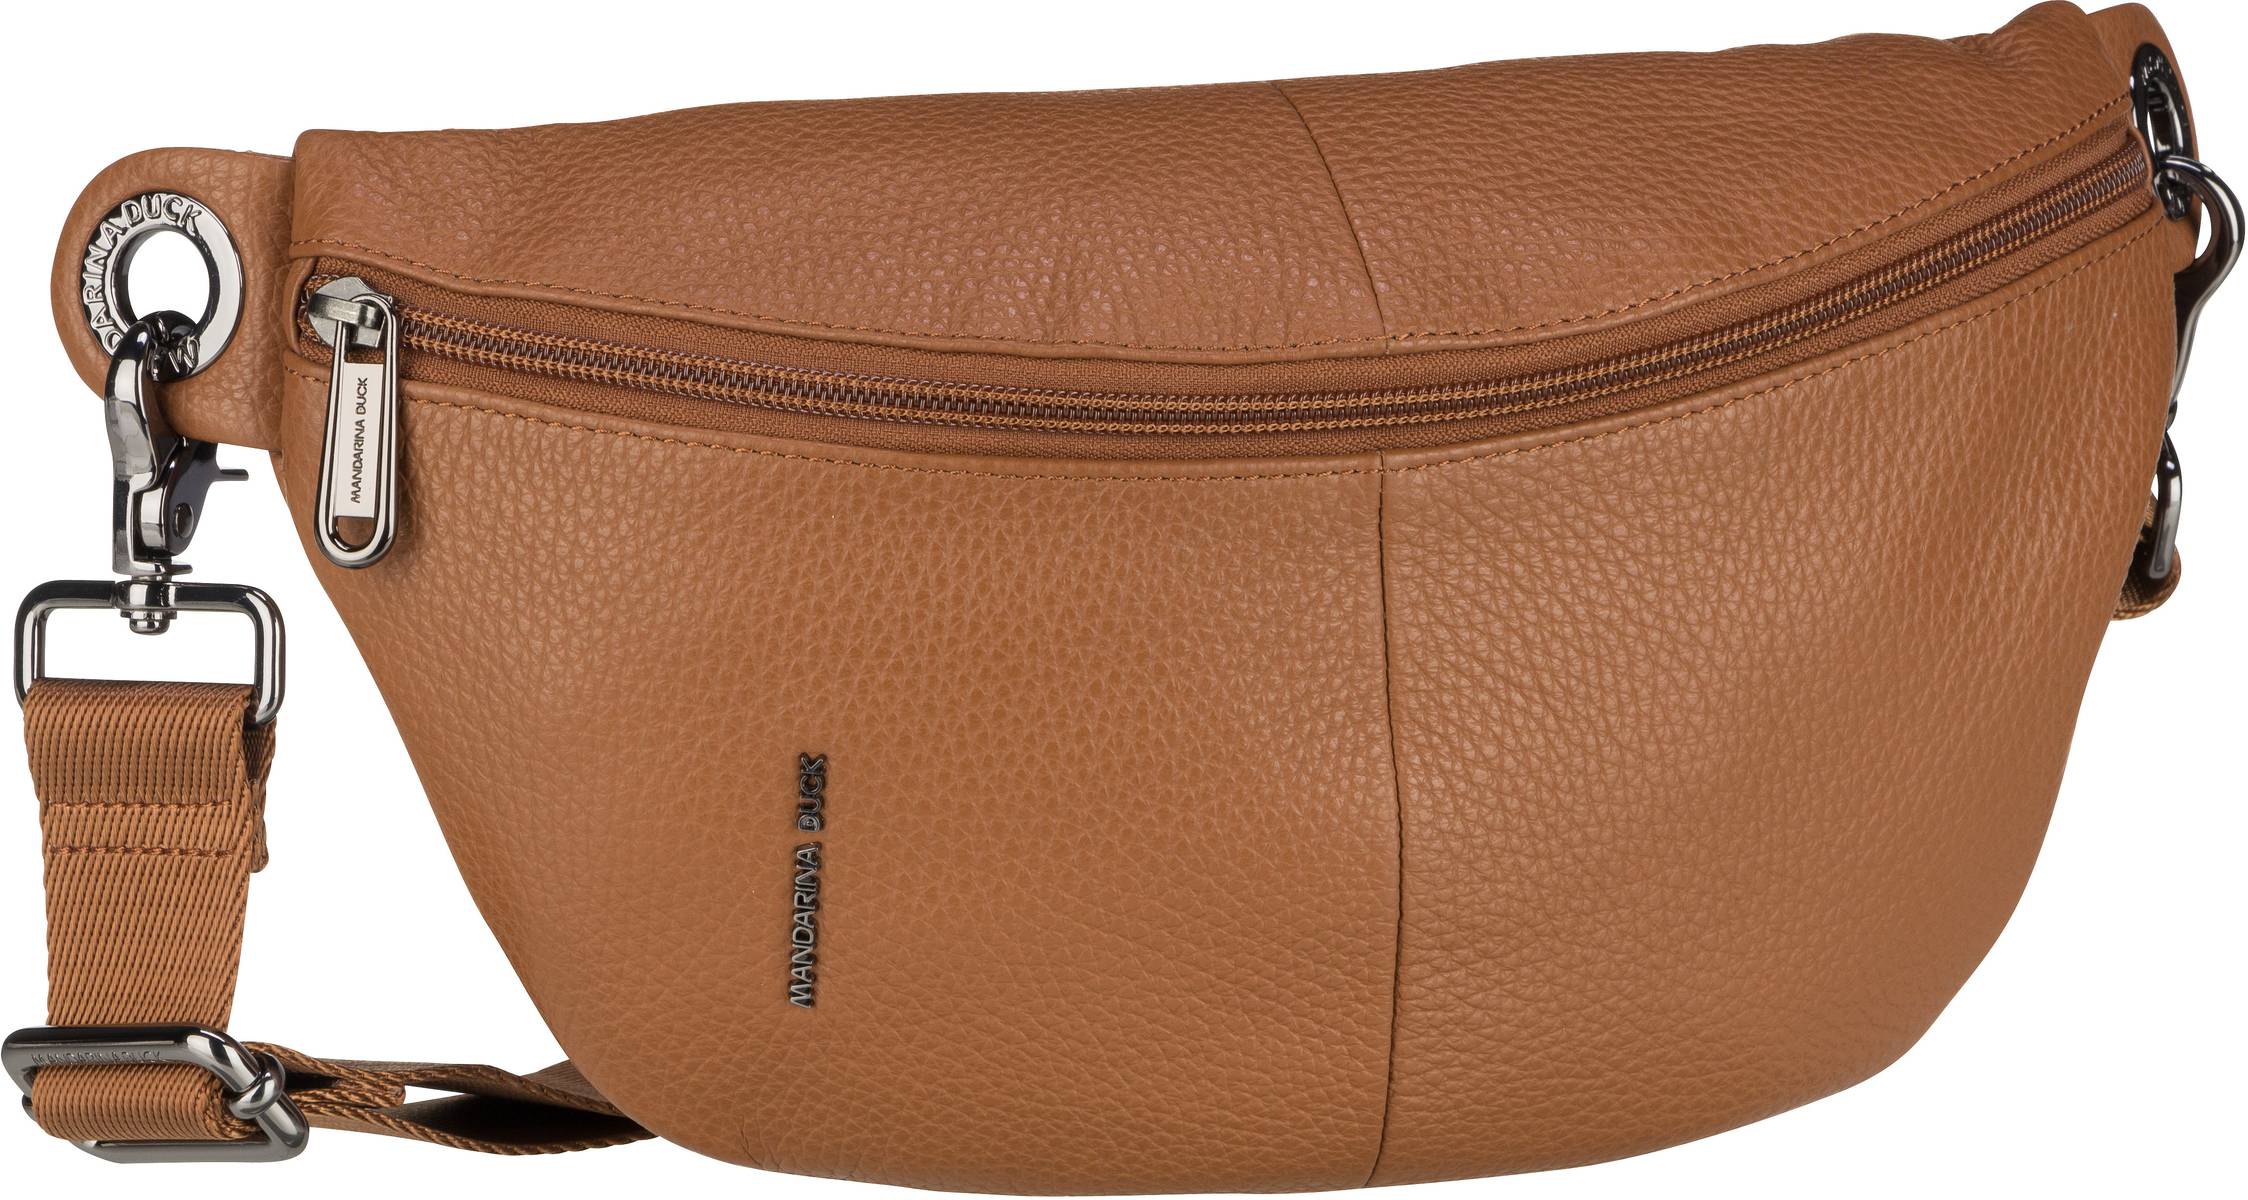 Mandarina Duck Mellow Leather Bum Bag FZT73 - Indian Tan